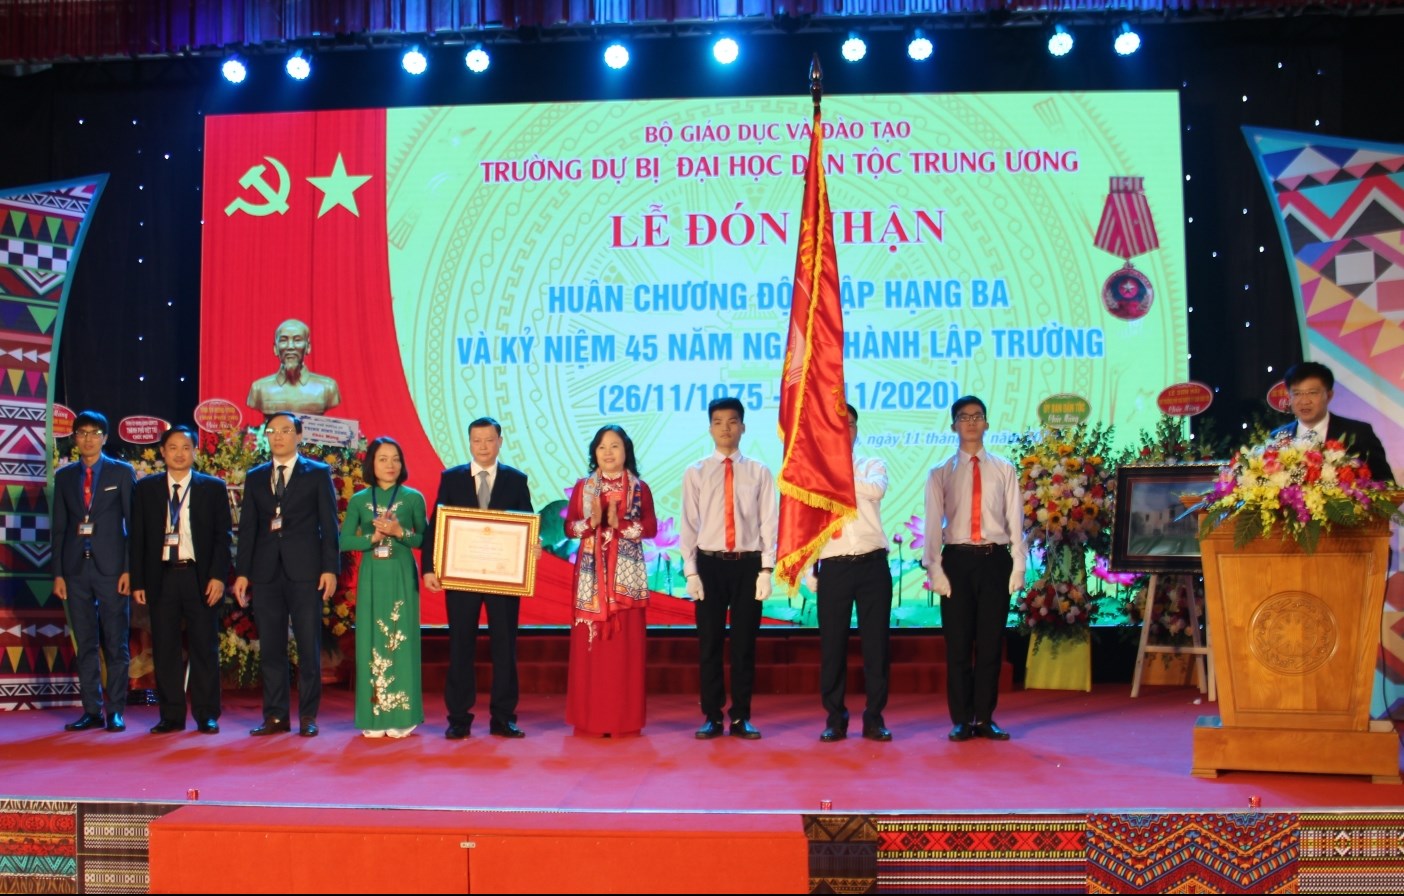 Thừa ủy quyền của Chủ tịch nước, Thứ trượng Bộ GD&ĐT Ngô Thị Minh trao tặng Huân chương Độc lập hạng Ba cho Trường Dự bị ĐH Dân tộc Trung ương